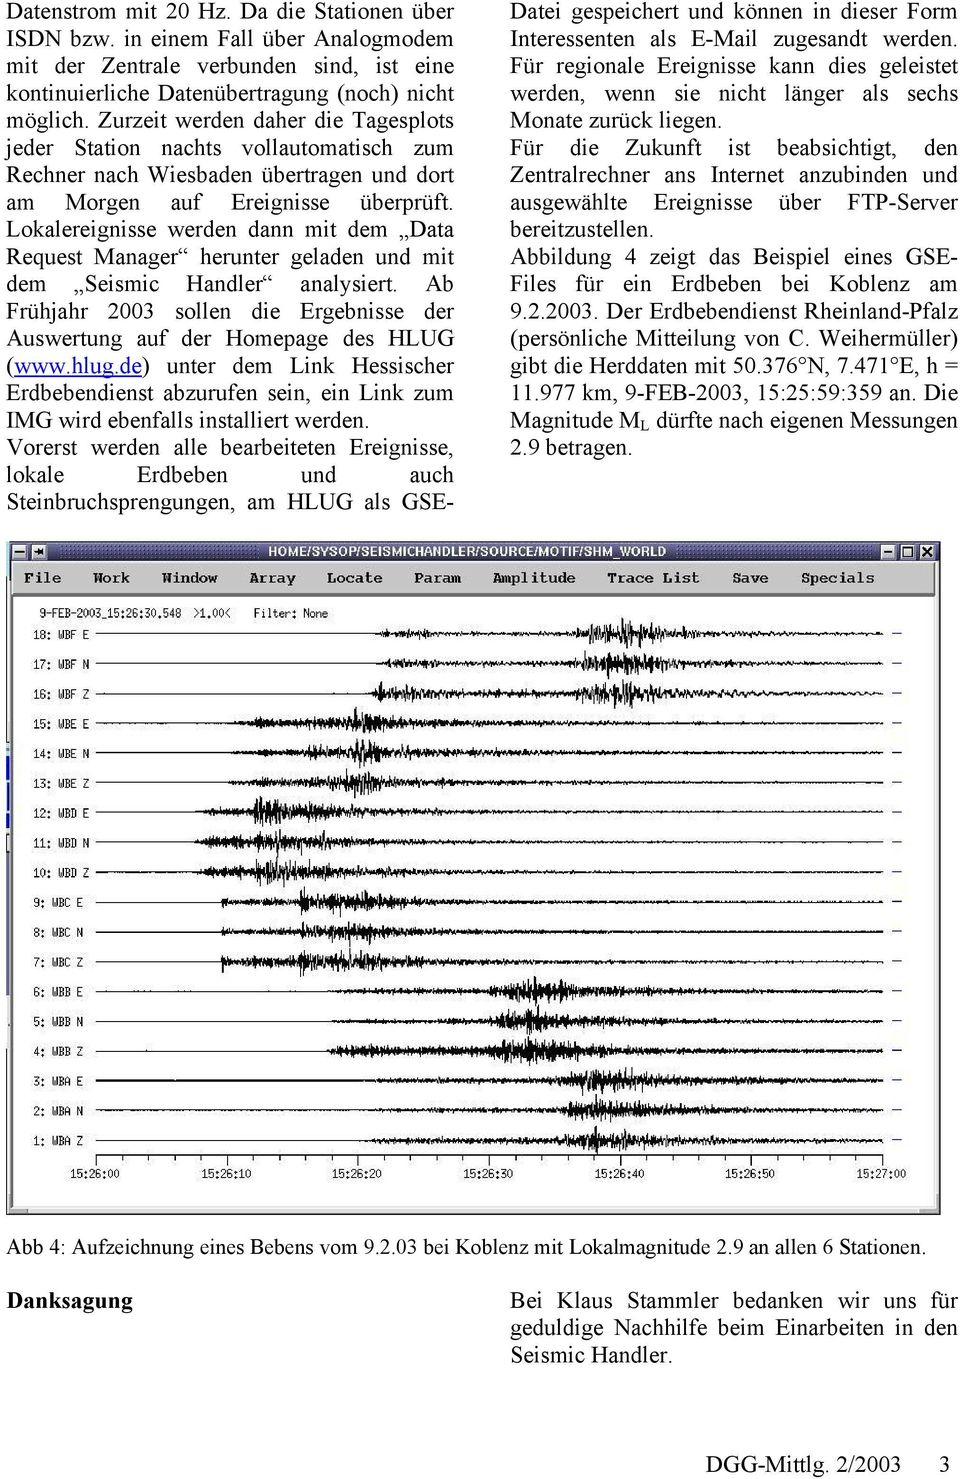 Lokalereignisse werden dann mit dem Data Request Manager herunter geladen und mit dem Seismic Handler analysiert. Ab Frühjahr 2003 sollen die Ergebnisse der Auswertung auf der Homepage des HLUG (www.